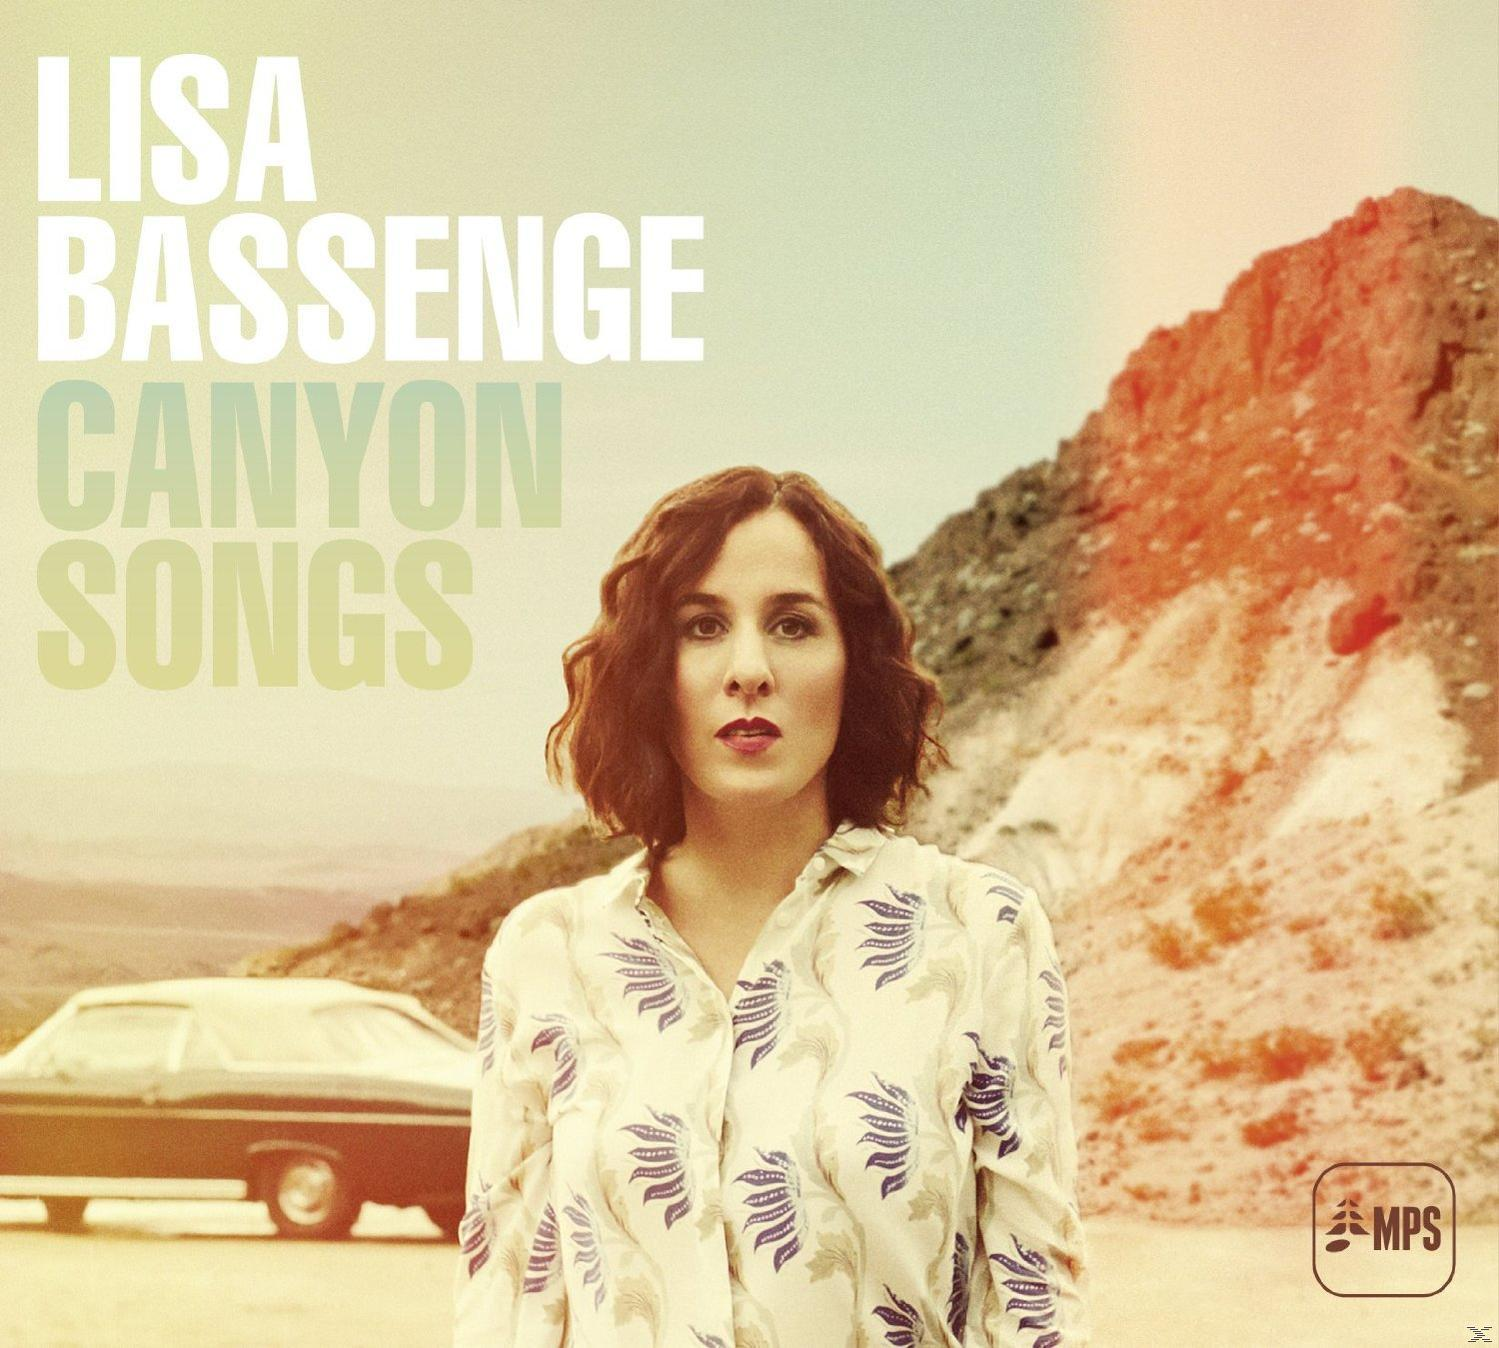 Lisa Bassenge (Vinyl) - - Songs Canyon